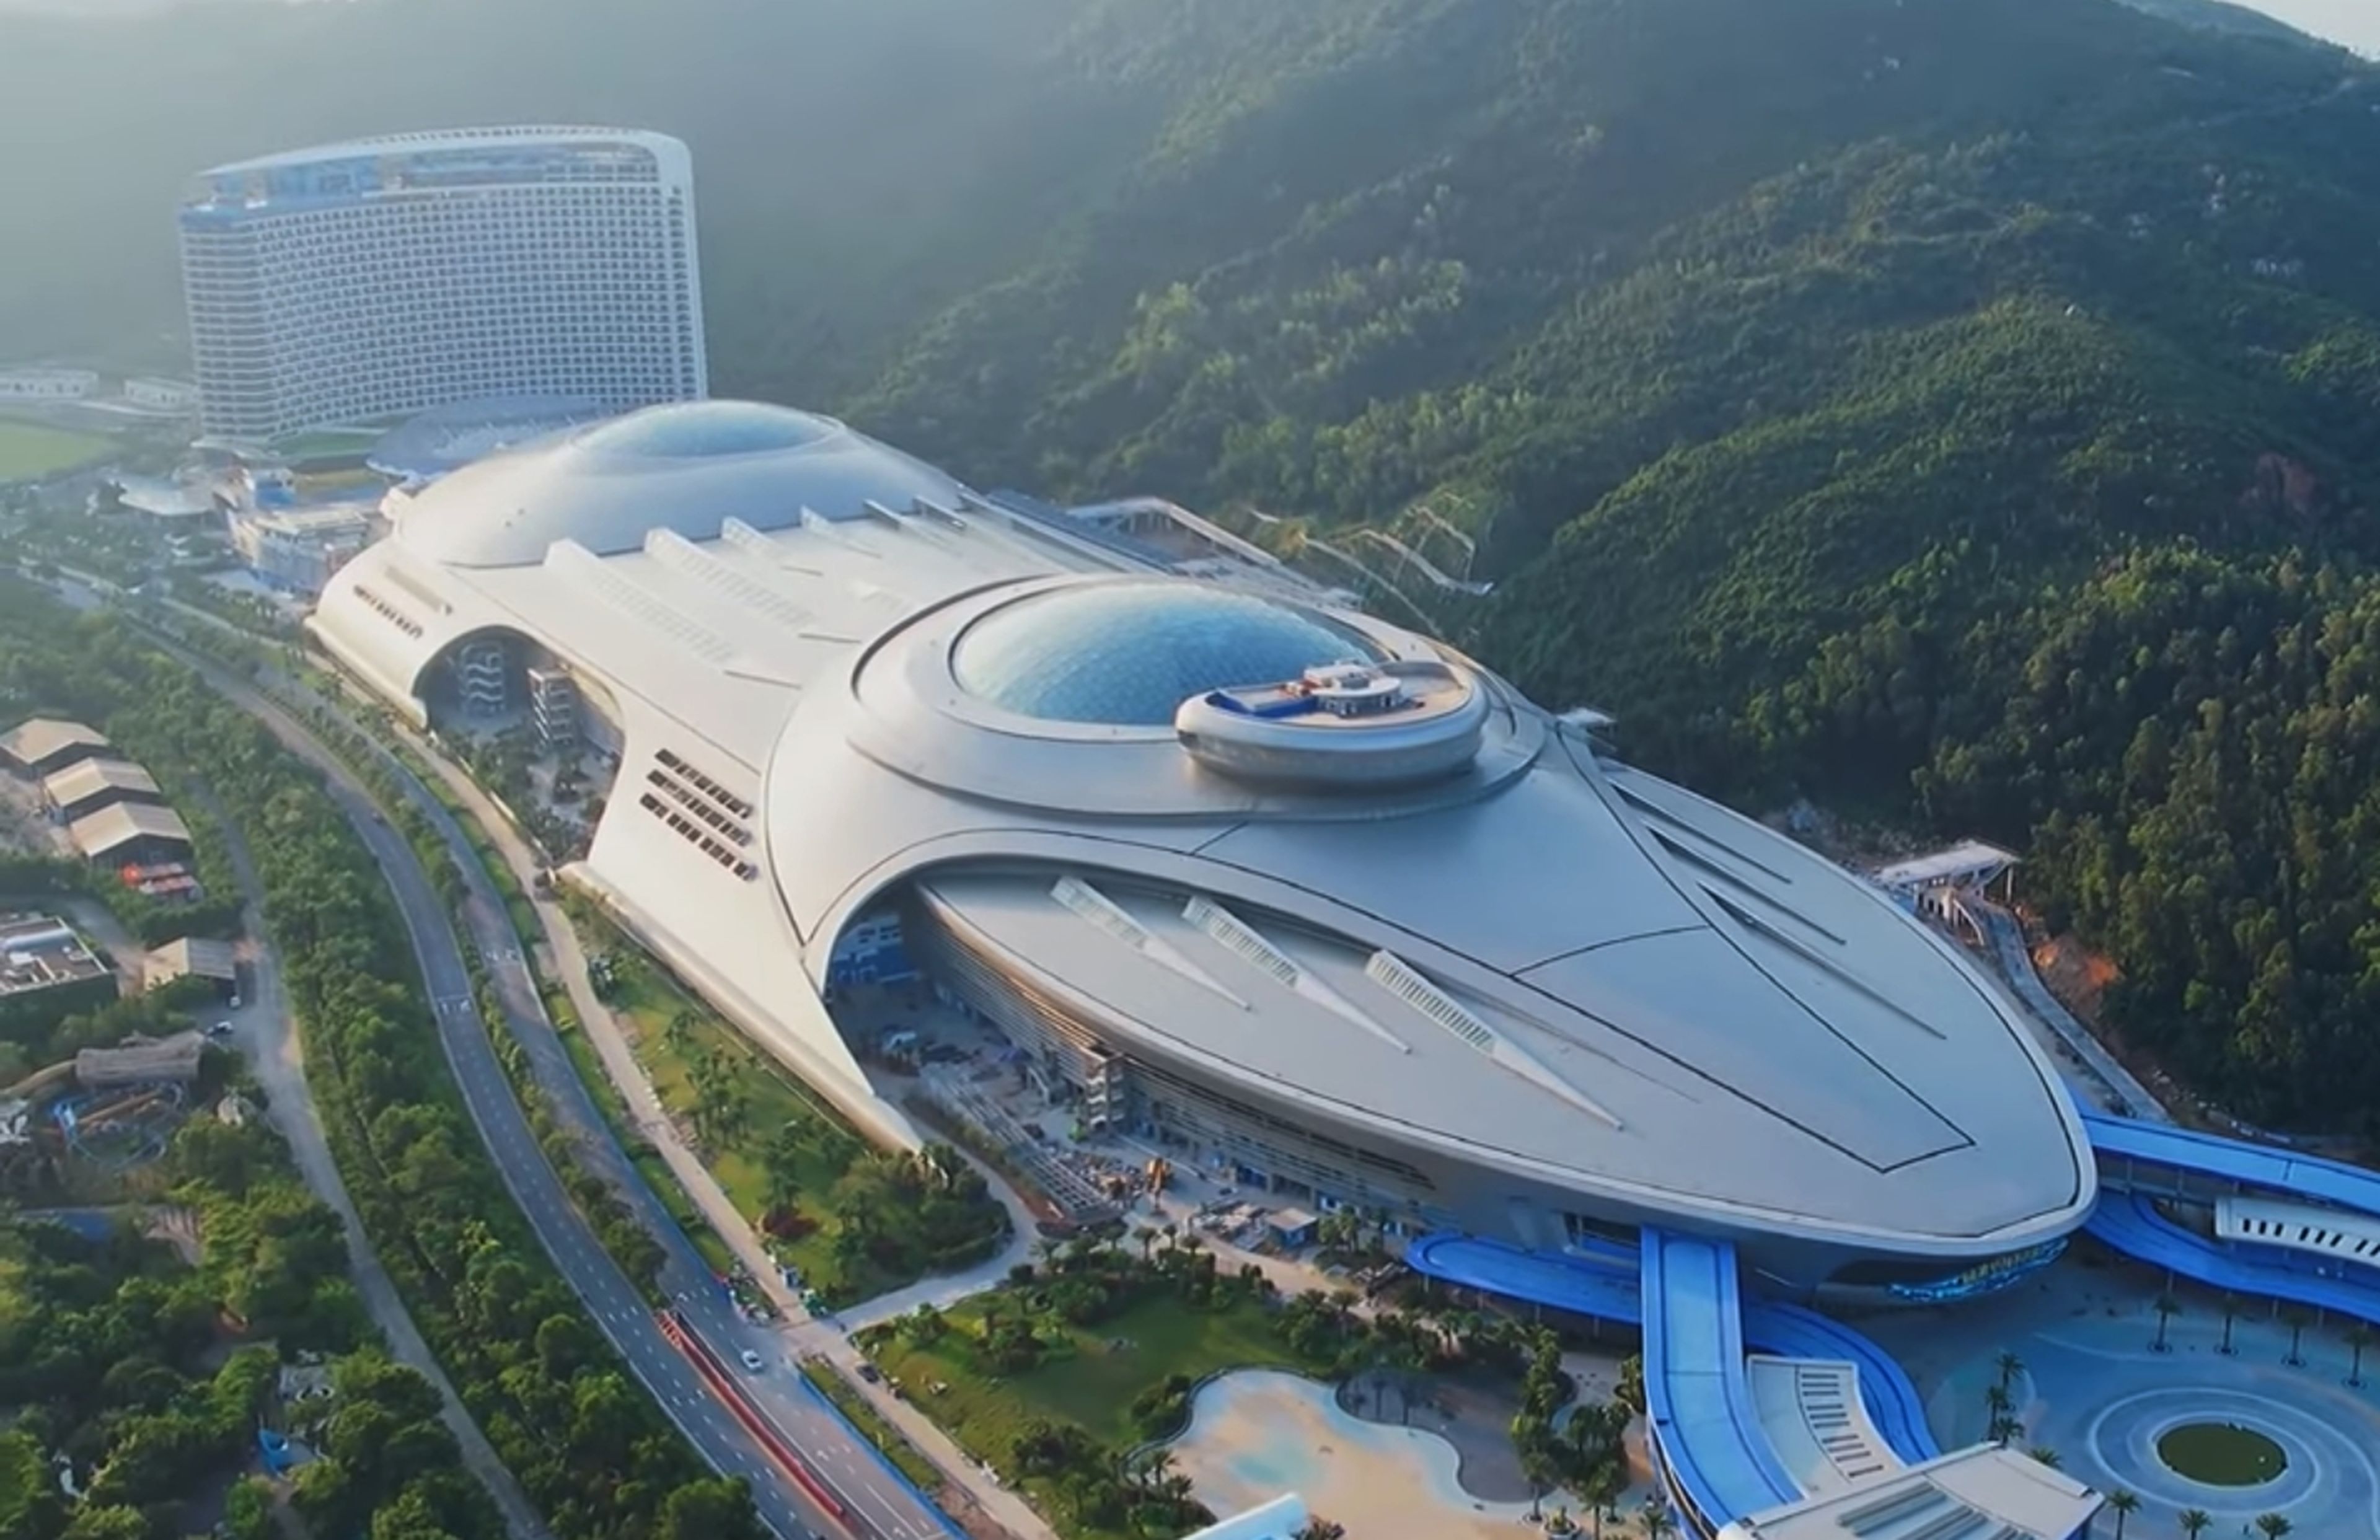 Una nave espacial de 650 metros de largo, reposa en una montaña en China